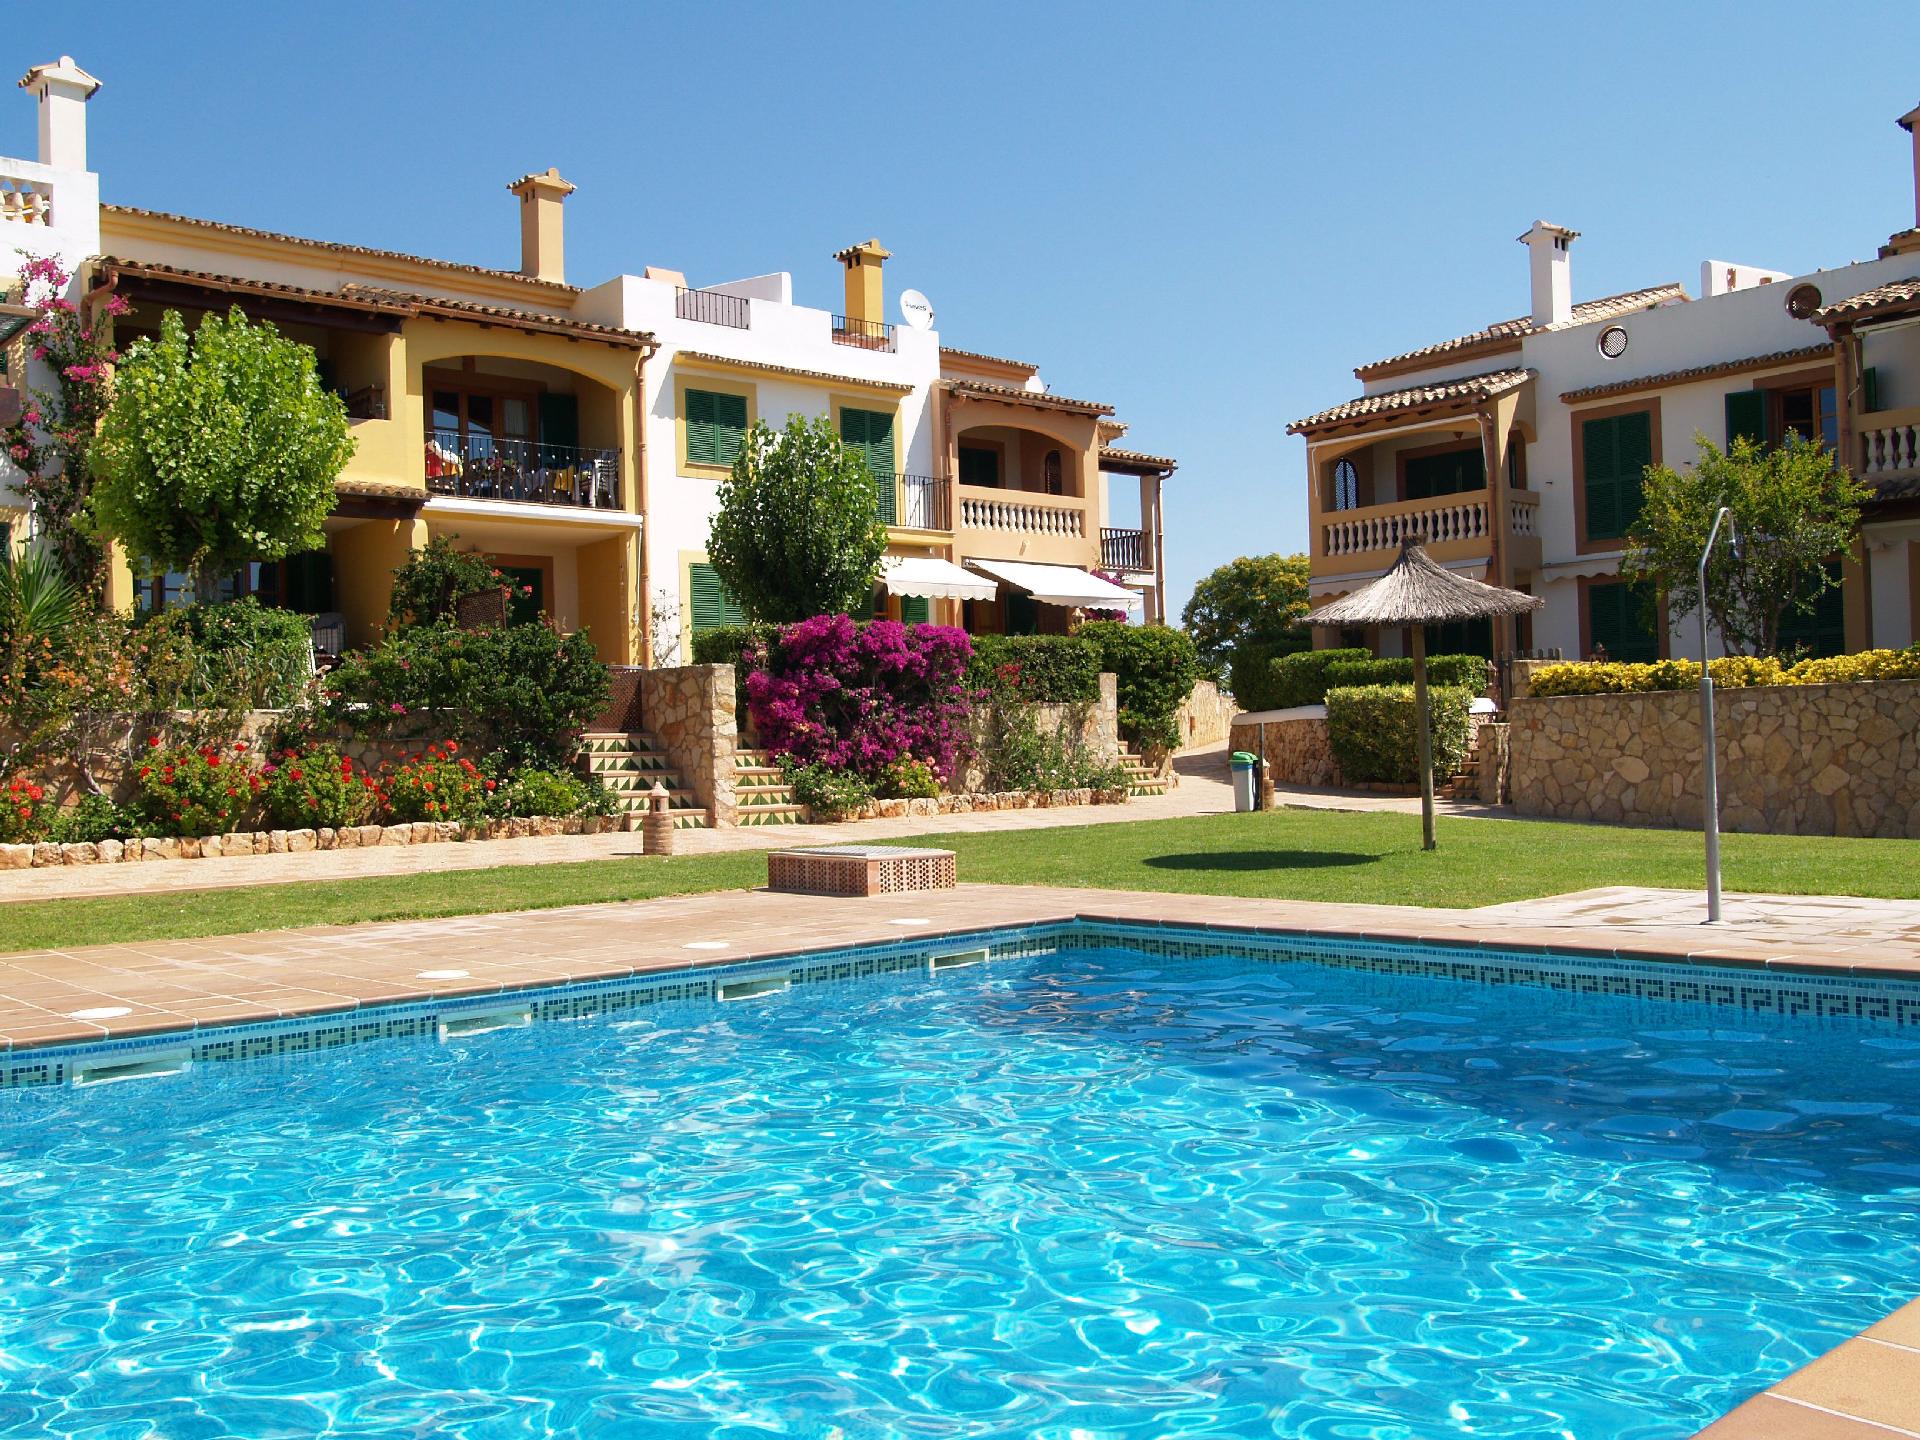 Ferienwohnung für 4 Personen ca. 85 m² i Ferienwohnung  Mallorca Süd